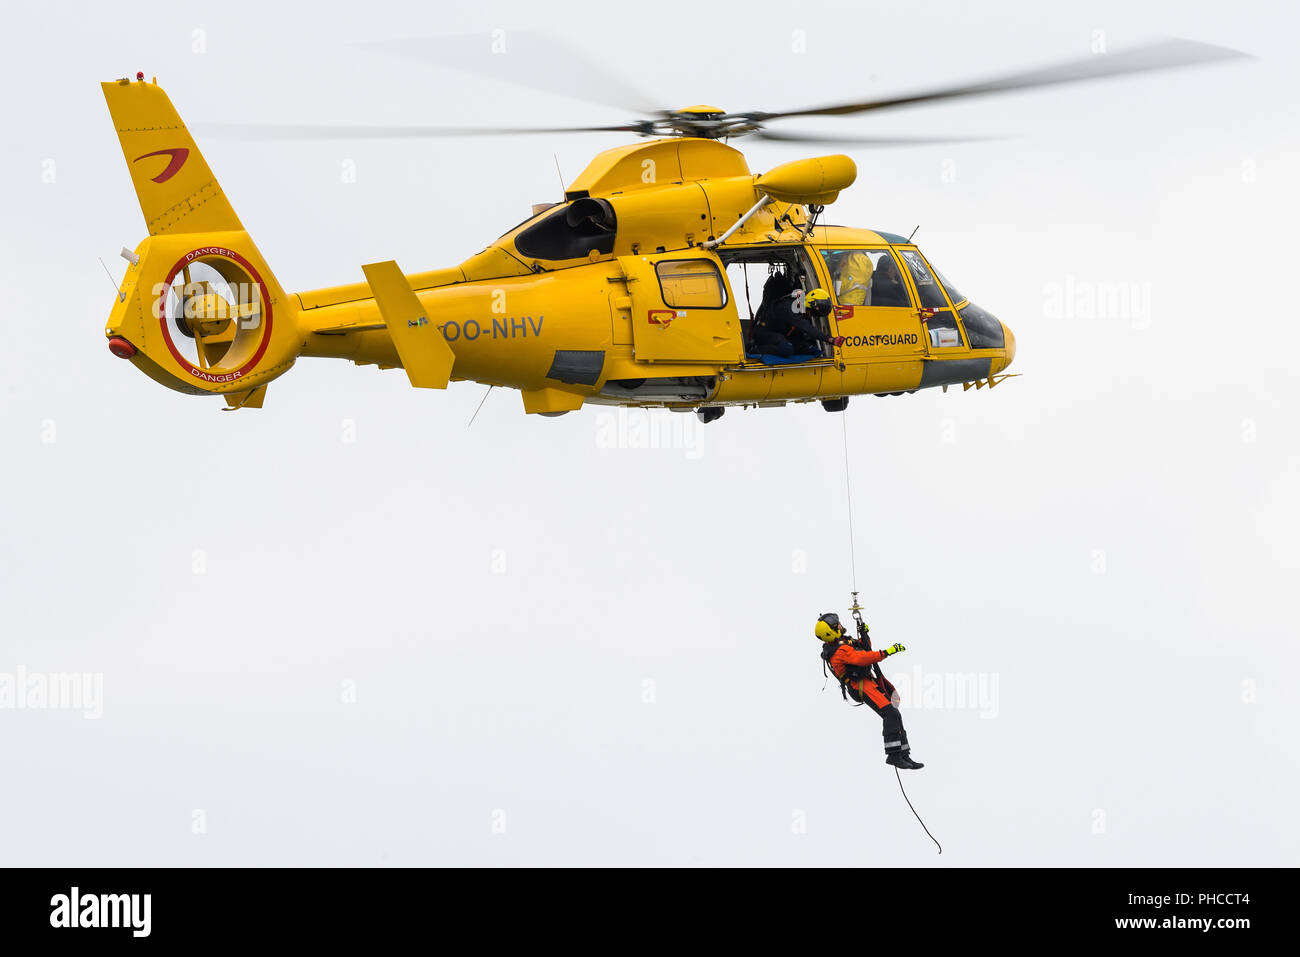 Un Eurocopter AS365 Dauphin d'hélicoptères de recherche et de sauvetage de l'exploitant d'hélicoptères civils Noordzee Helikopters Vlaanderen (NHV). Banque D'Images